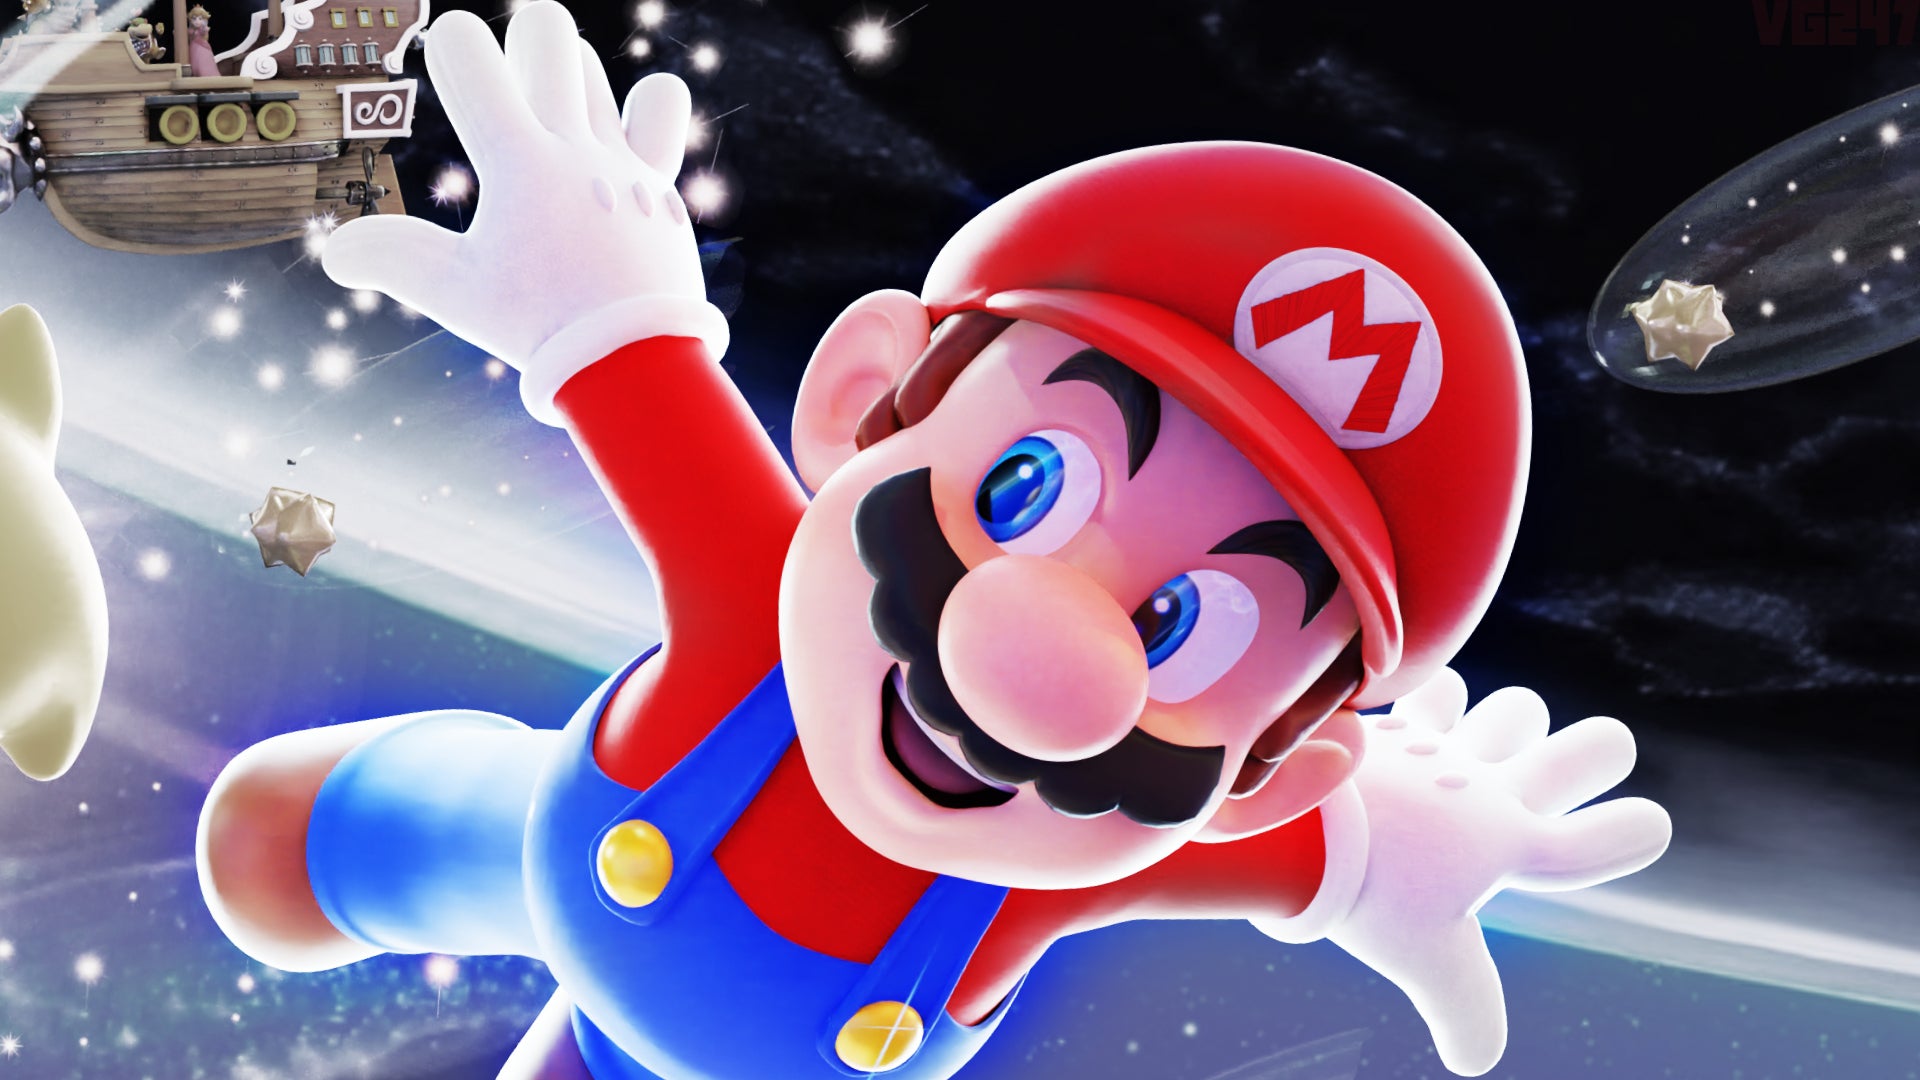 Super Mario Galaxy: Bạn có muốn khám phá vũ trụ đầy màu sắc trong game Super Mario Galaxy? Với nhiều vị trí thú vị và những thử thách chưa từng có, bạn sẽ không thể rời mắt khi đặt chân vào thế giới huyền diệu này.